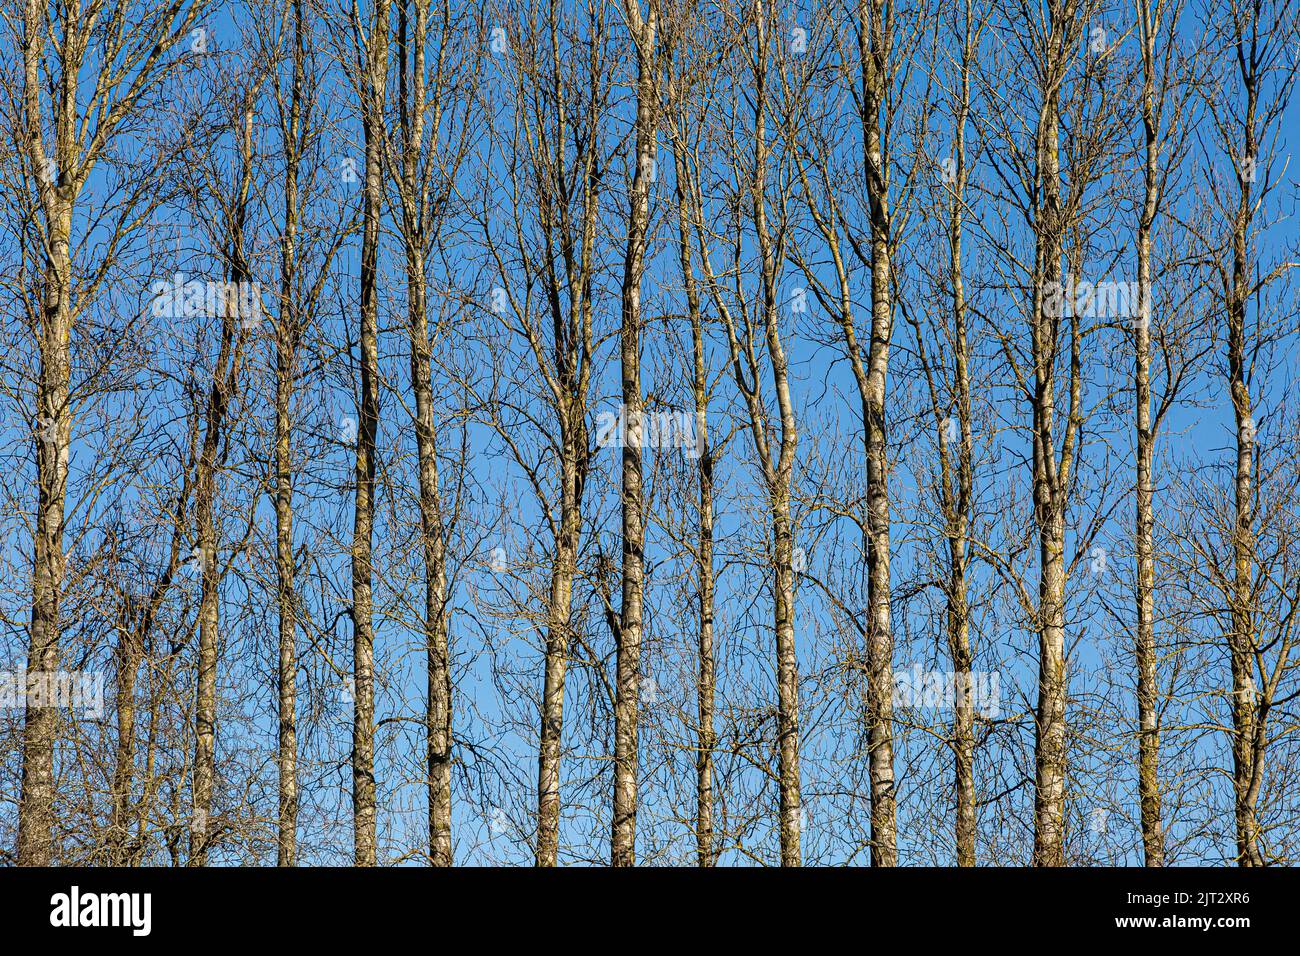 Una hilera de altos árboles desnudos en invierno, con un cielo azul detrás Foto de stock